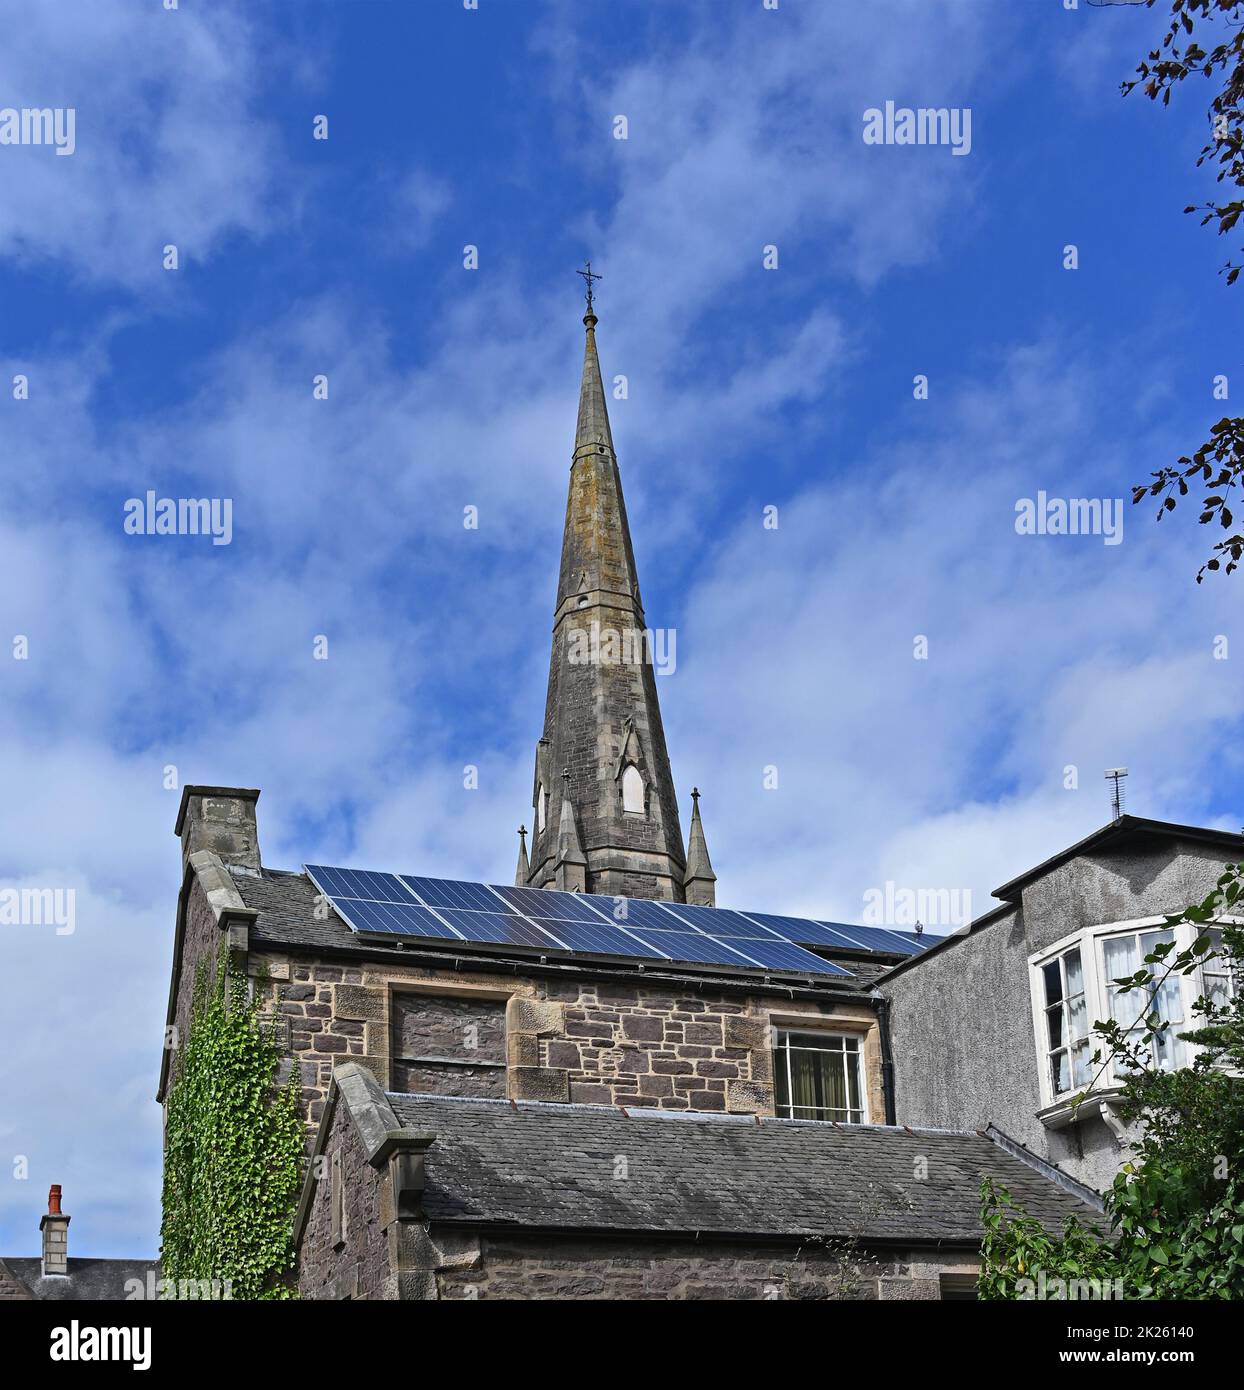 Solar panels on roof of house. Lanark, Lanarkshire, Scotland, United Kingdom, Europe. Stock Photo